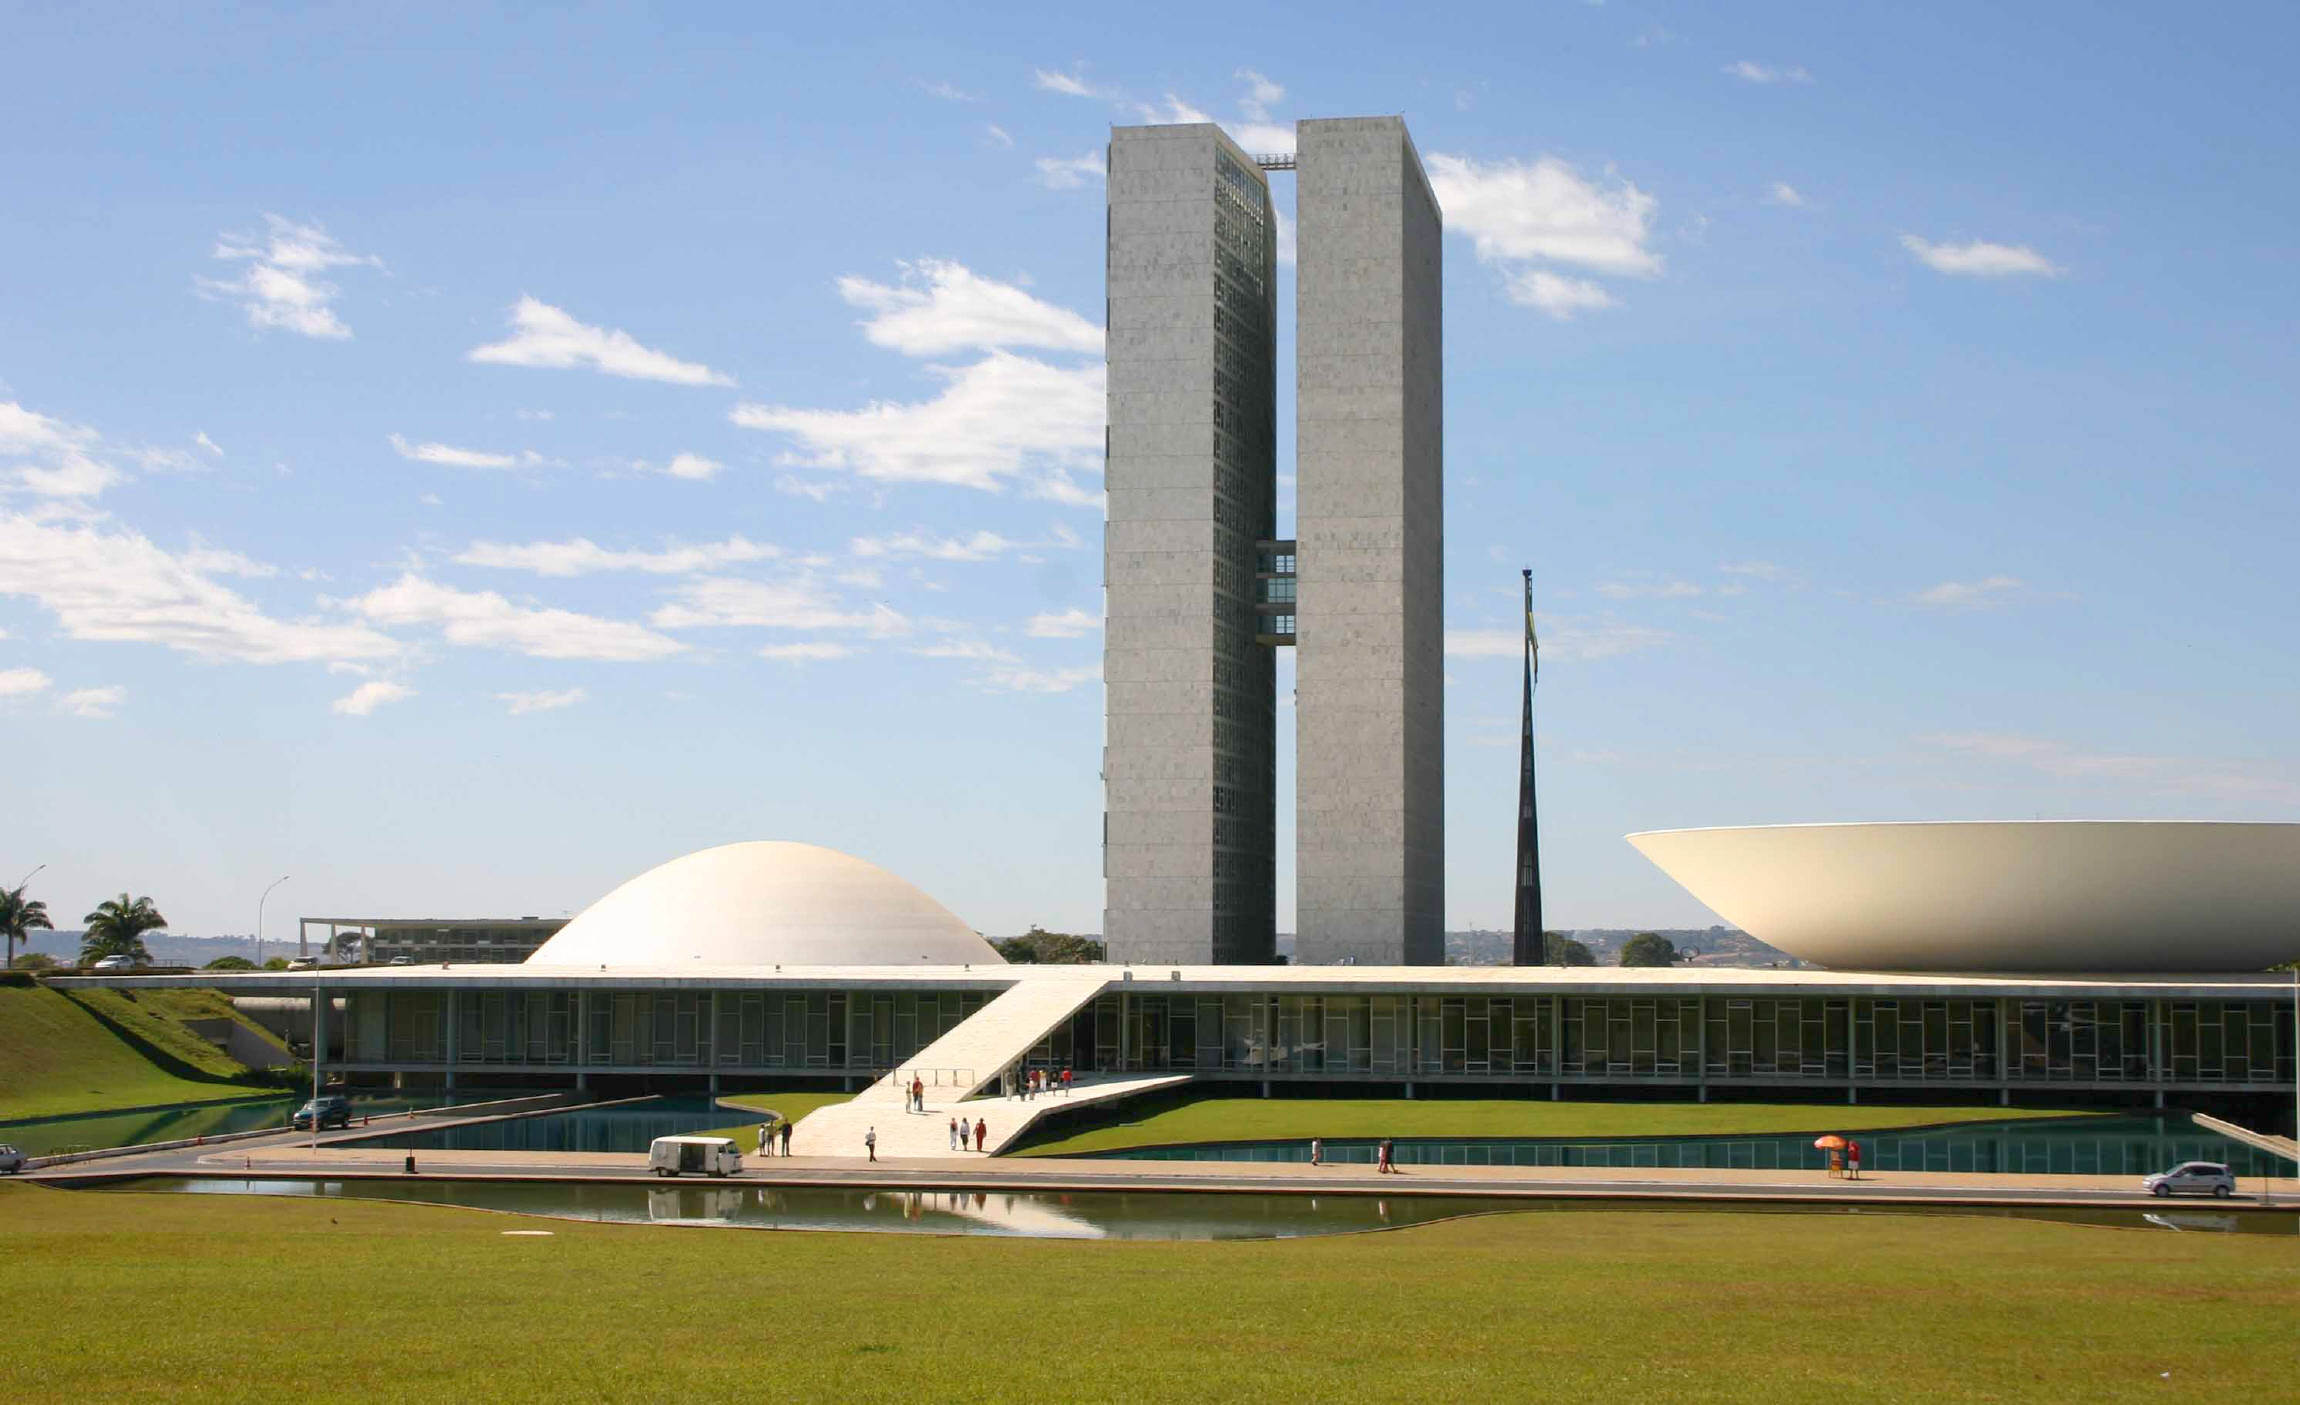 Le Congrès National de Brasilia. Brasilia, symbole de la ville moderne, idéale et avant-gardiste des années 1950, fête ses cinquante ans d'existence. cf fiche d'actualité scientifique n° 264.